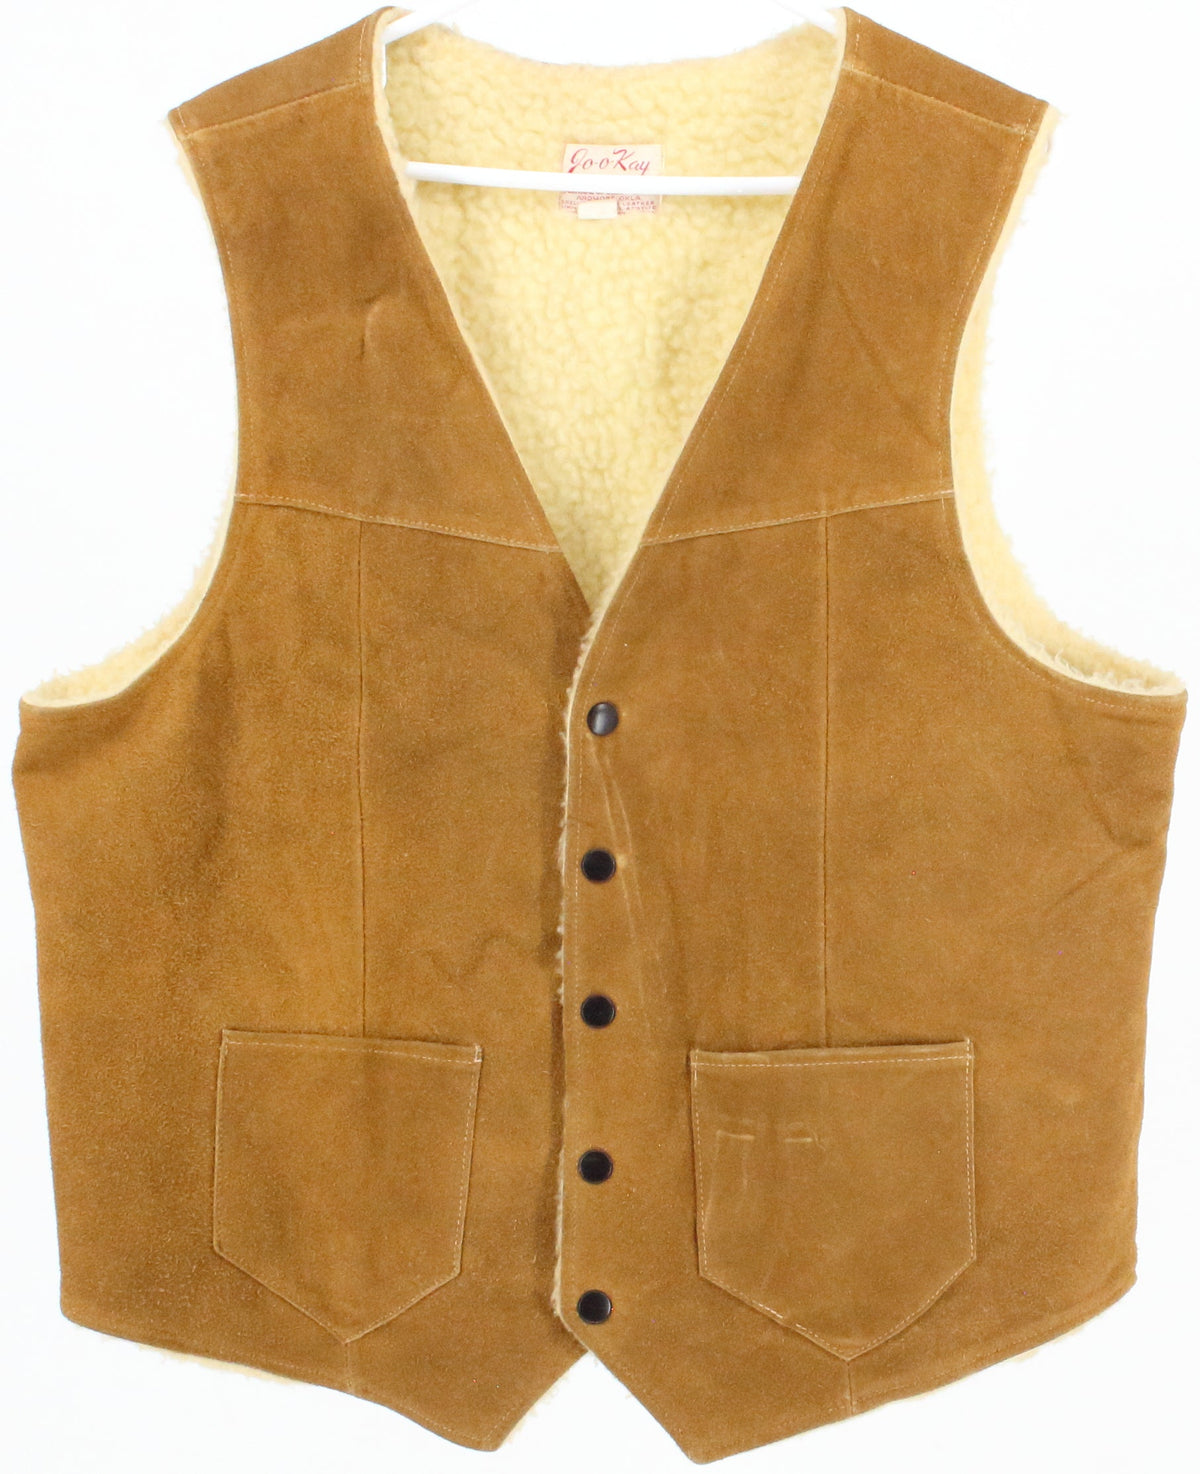 Jo-o-Kay Camel Leather Vest